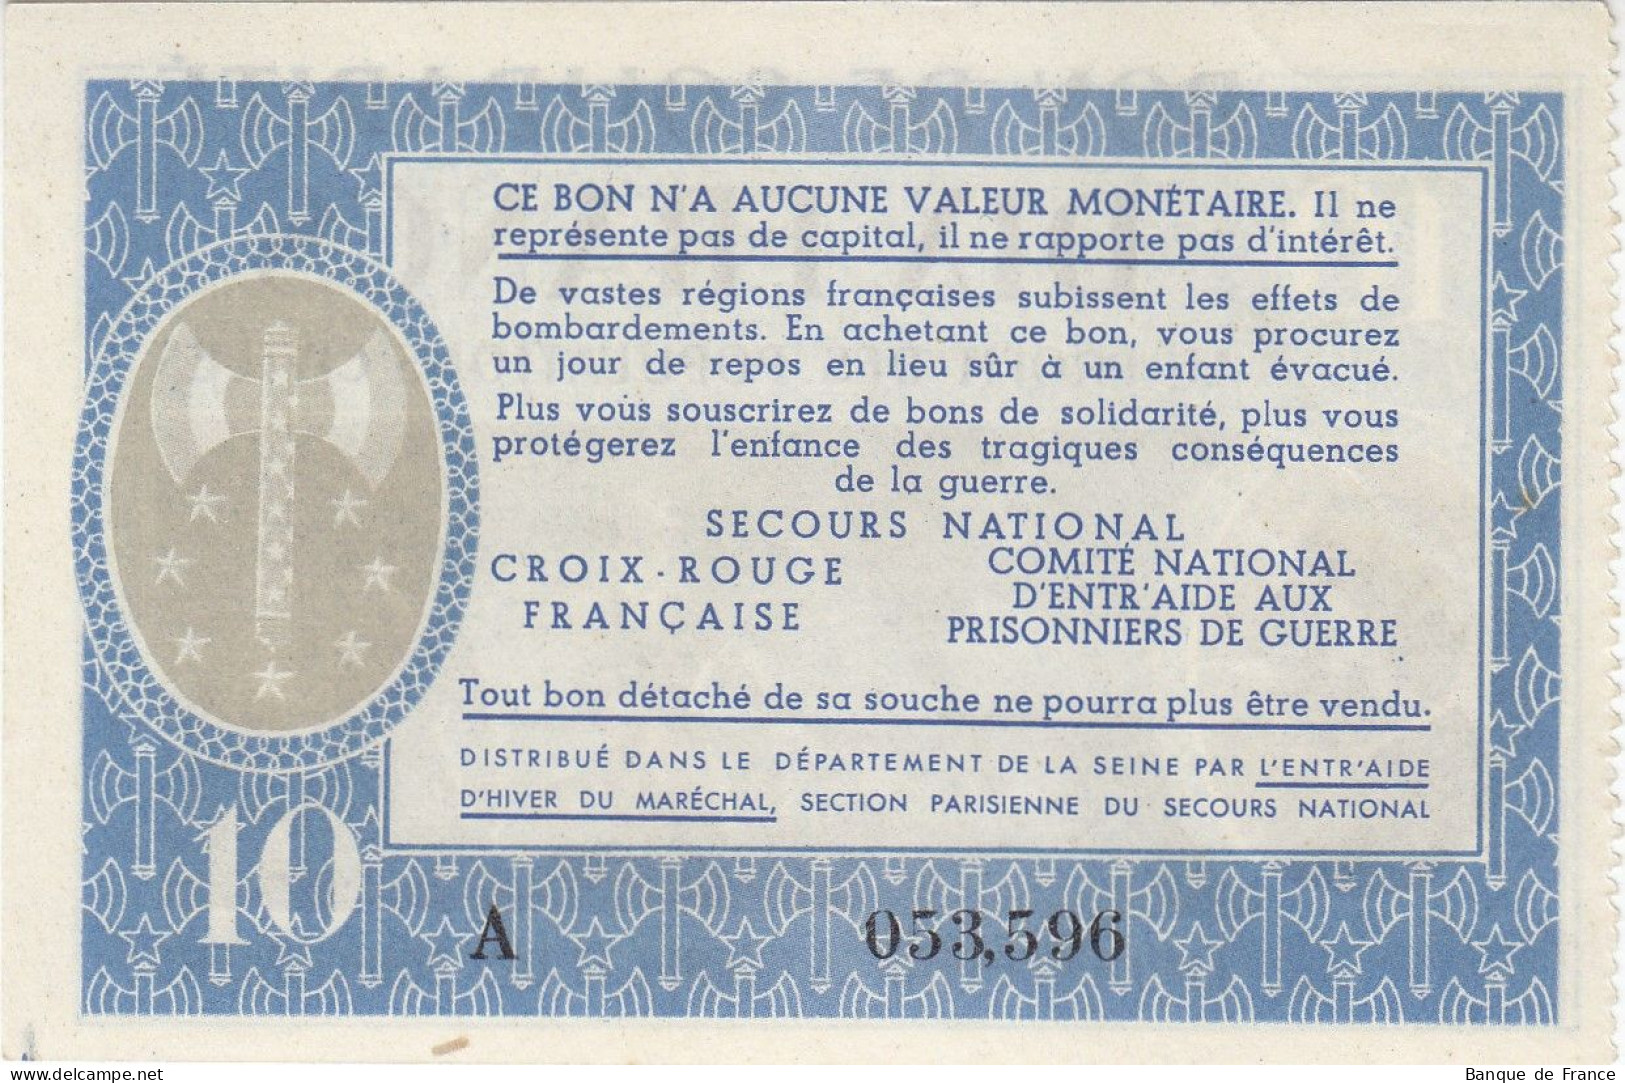 Bon De Solidarité France 10 Francs - Pétain 1941 / 1942 KL.07 NEUF Série A - Bons & Nécessité